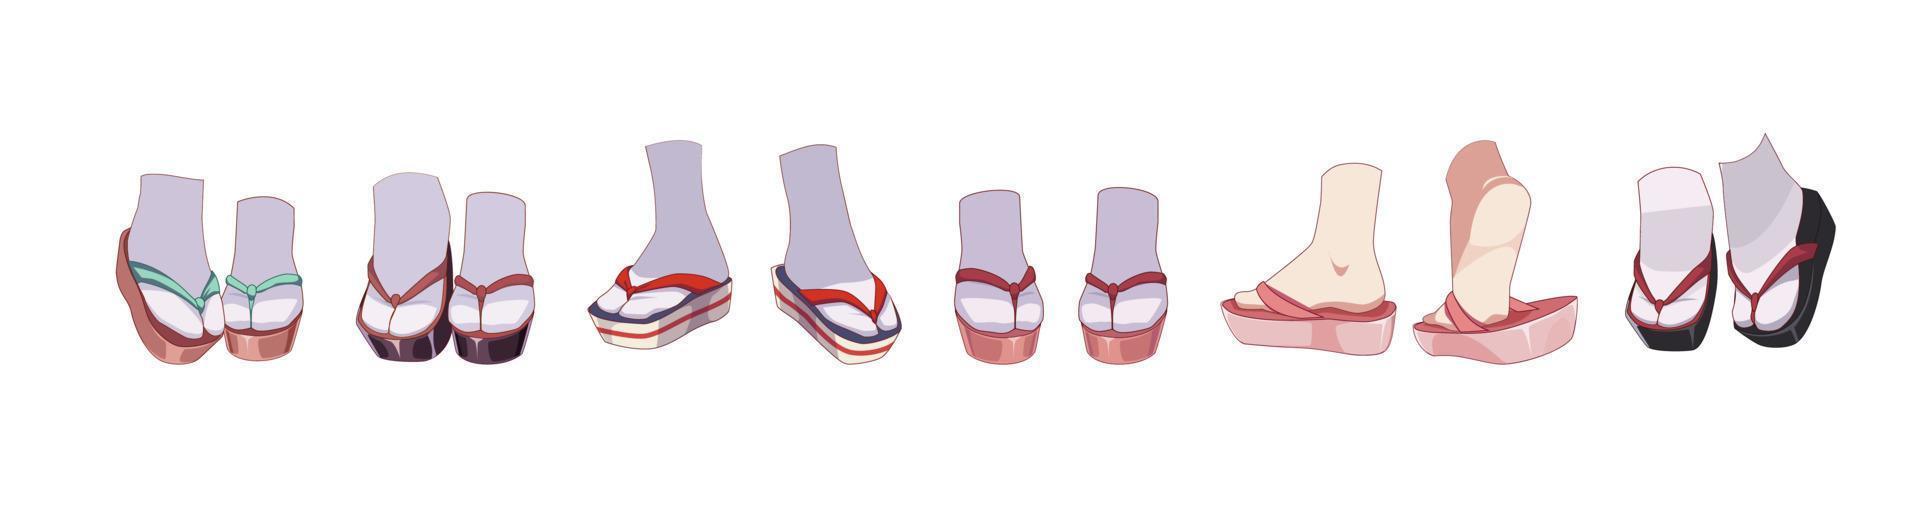 japanische schuhe - geta, zori. Sandalen für Mädchen Kimono Tracht. Füße in Socken. Vektor-Illustration vektor